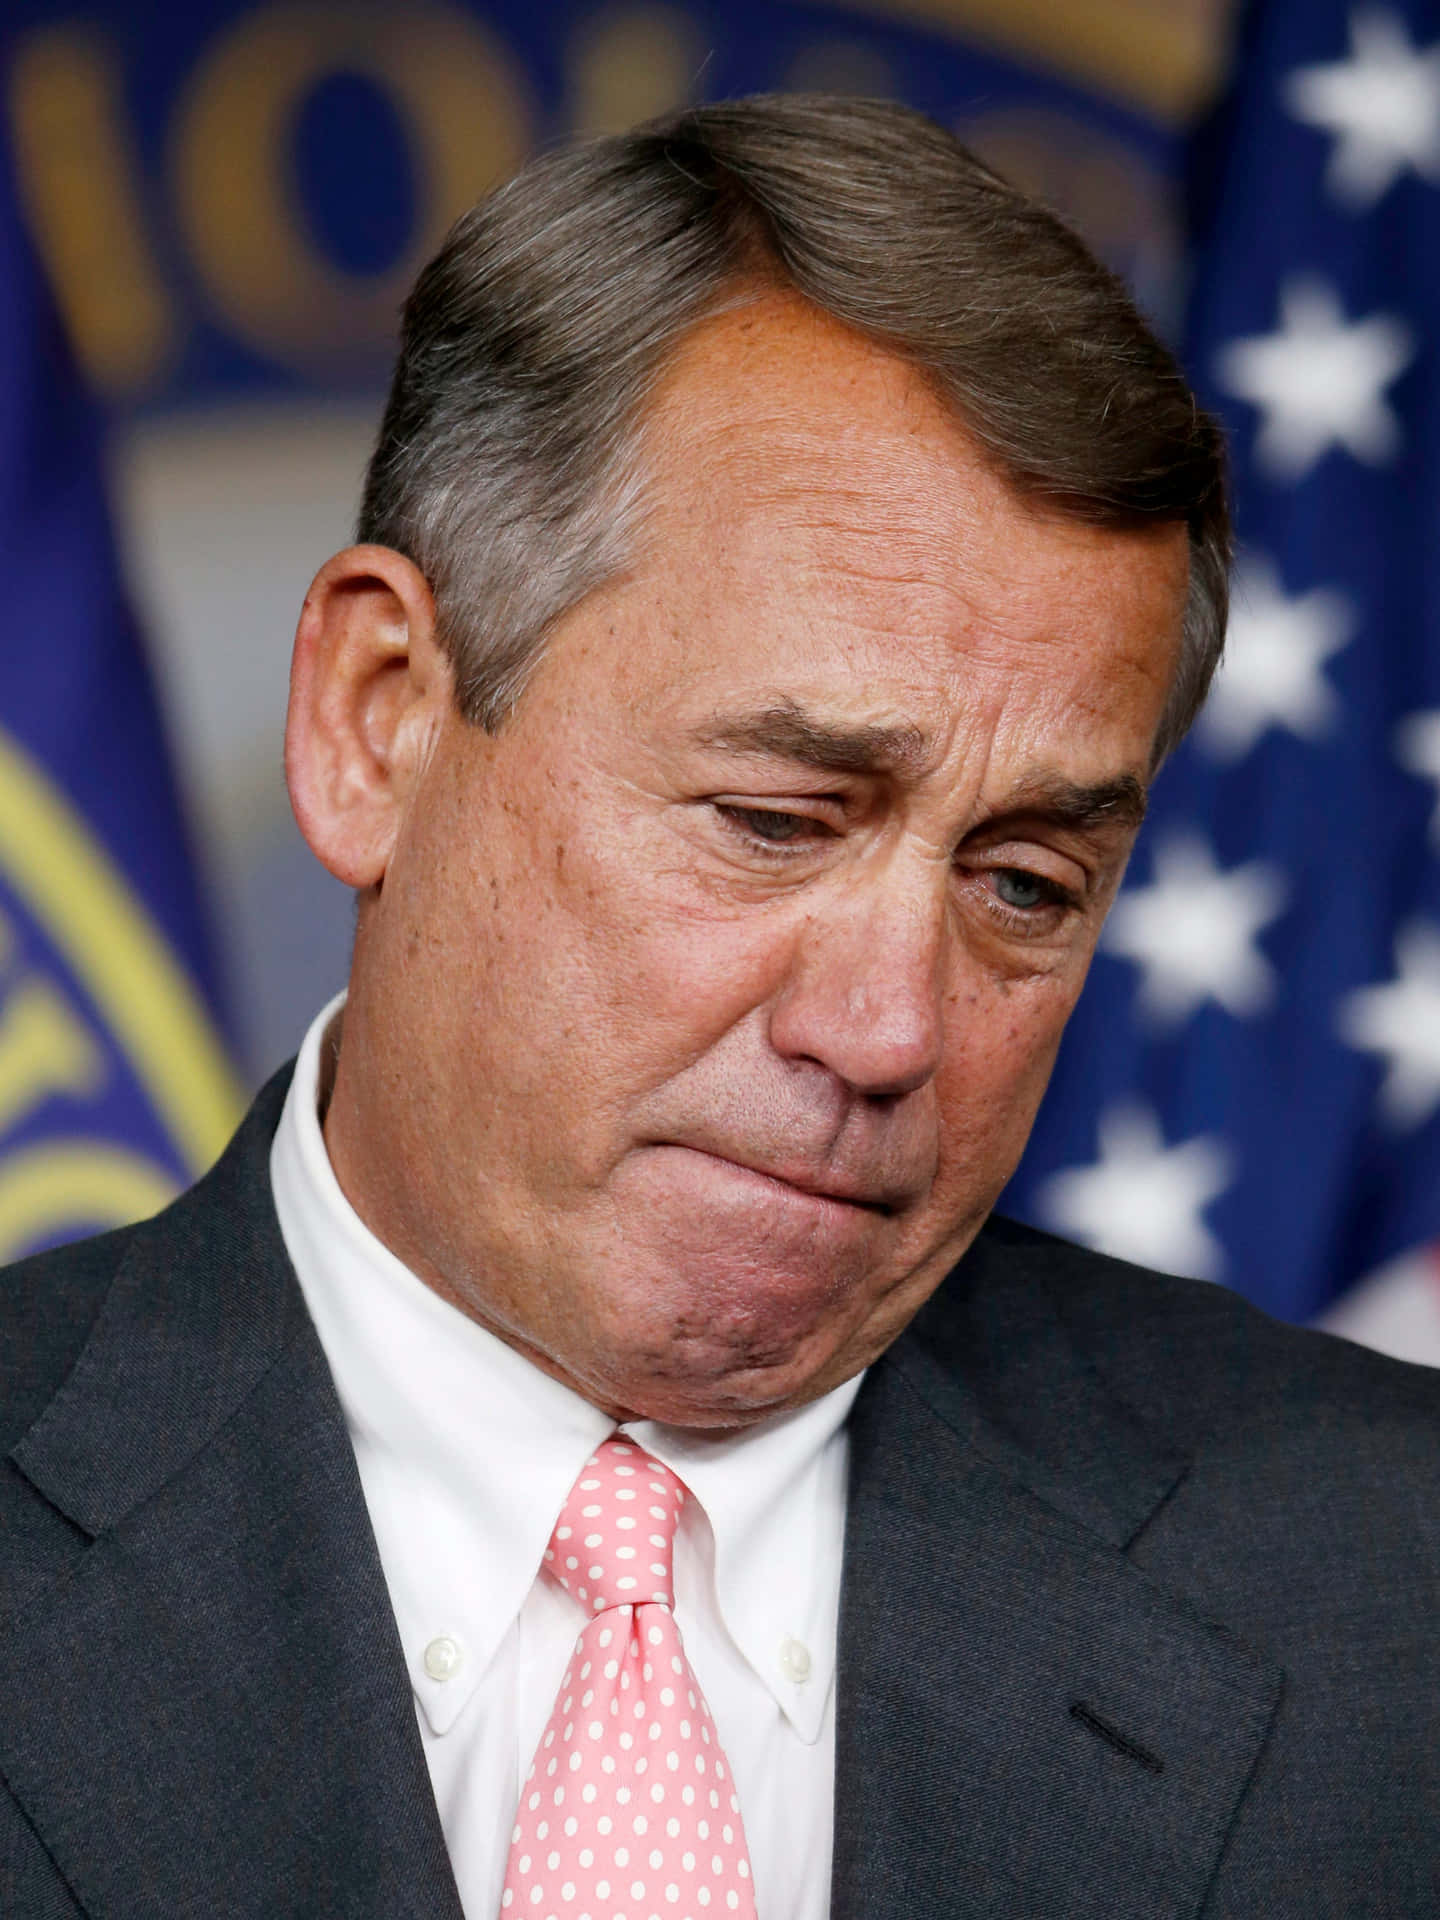 John Boehner Upset Portræt Tapet: Et billede af den tidligere amerikanske republikanske formand John Boehner, med et usikkert udtryk. Wallpaper